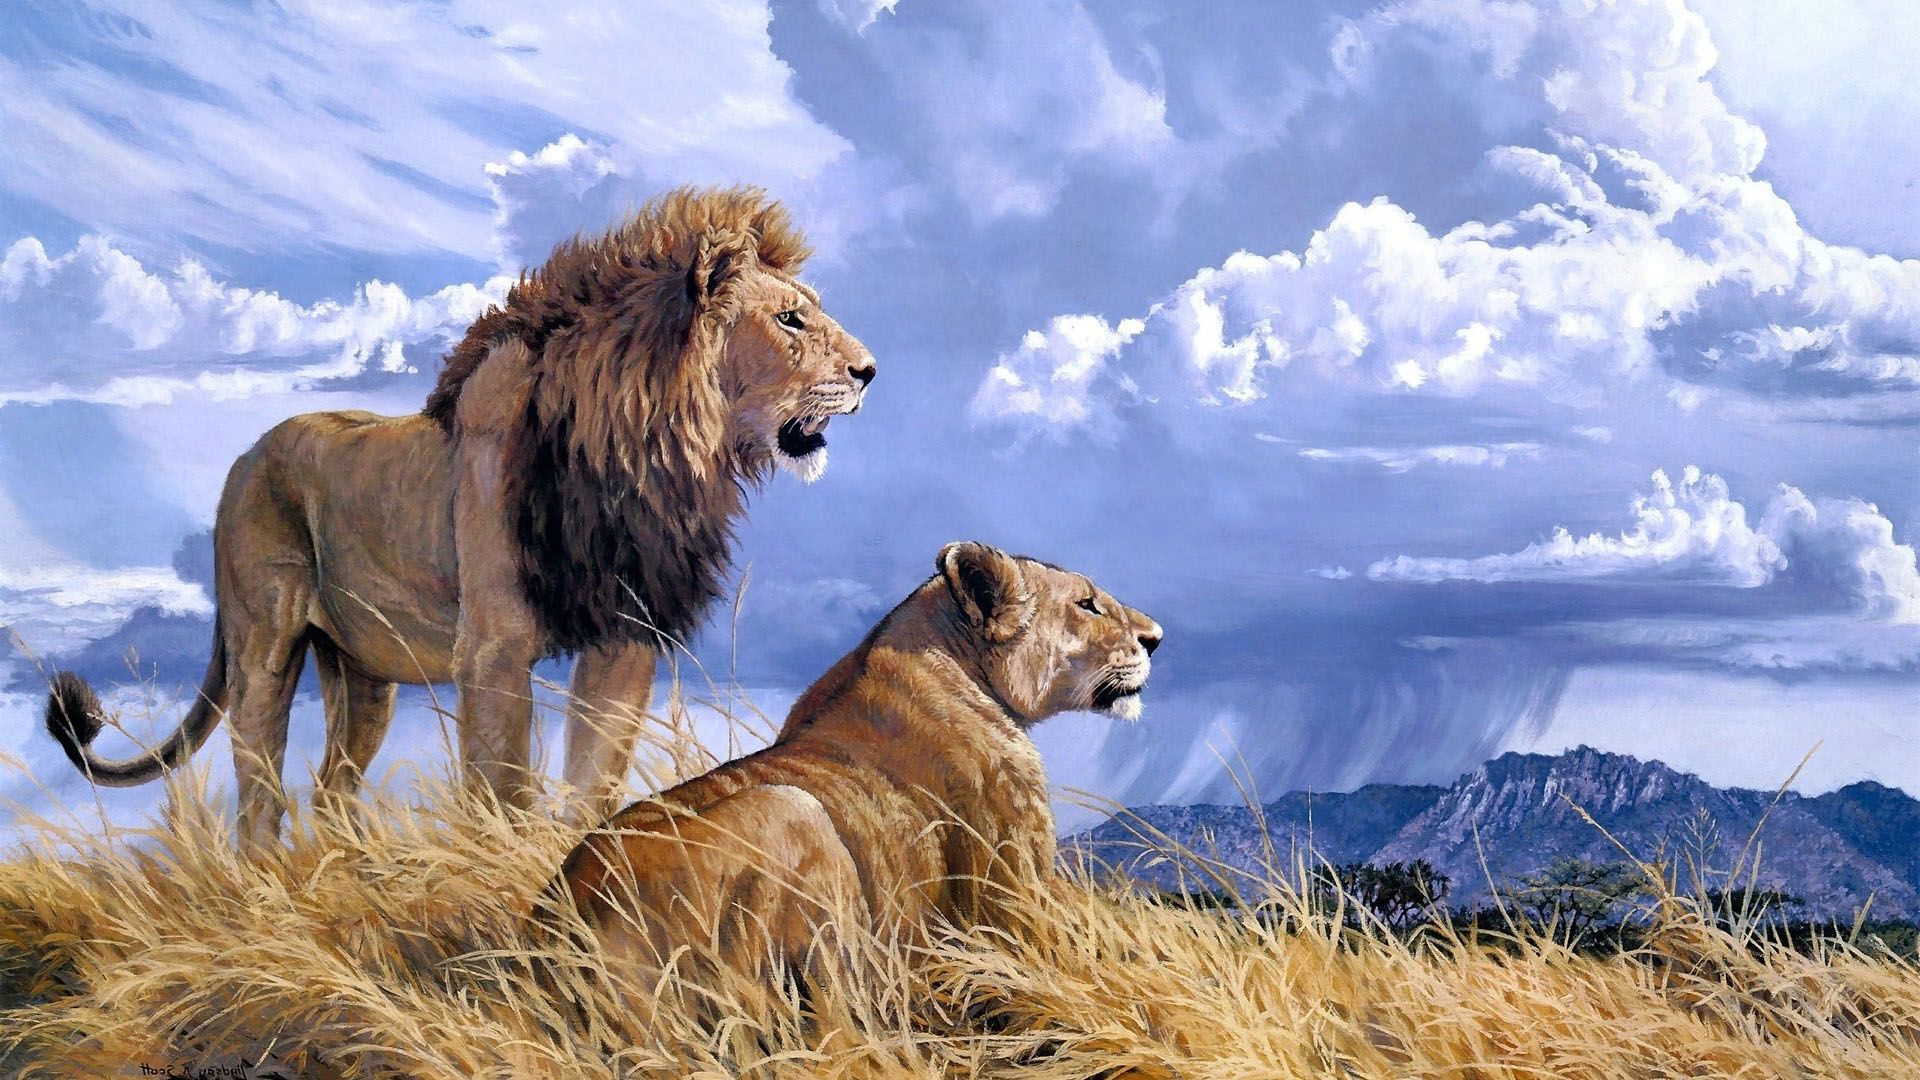 ライオンフルhdの壁紙,野生動物,ライオン,マサイライオン,ネコ科,陸生動物